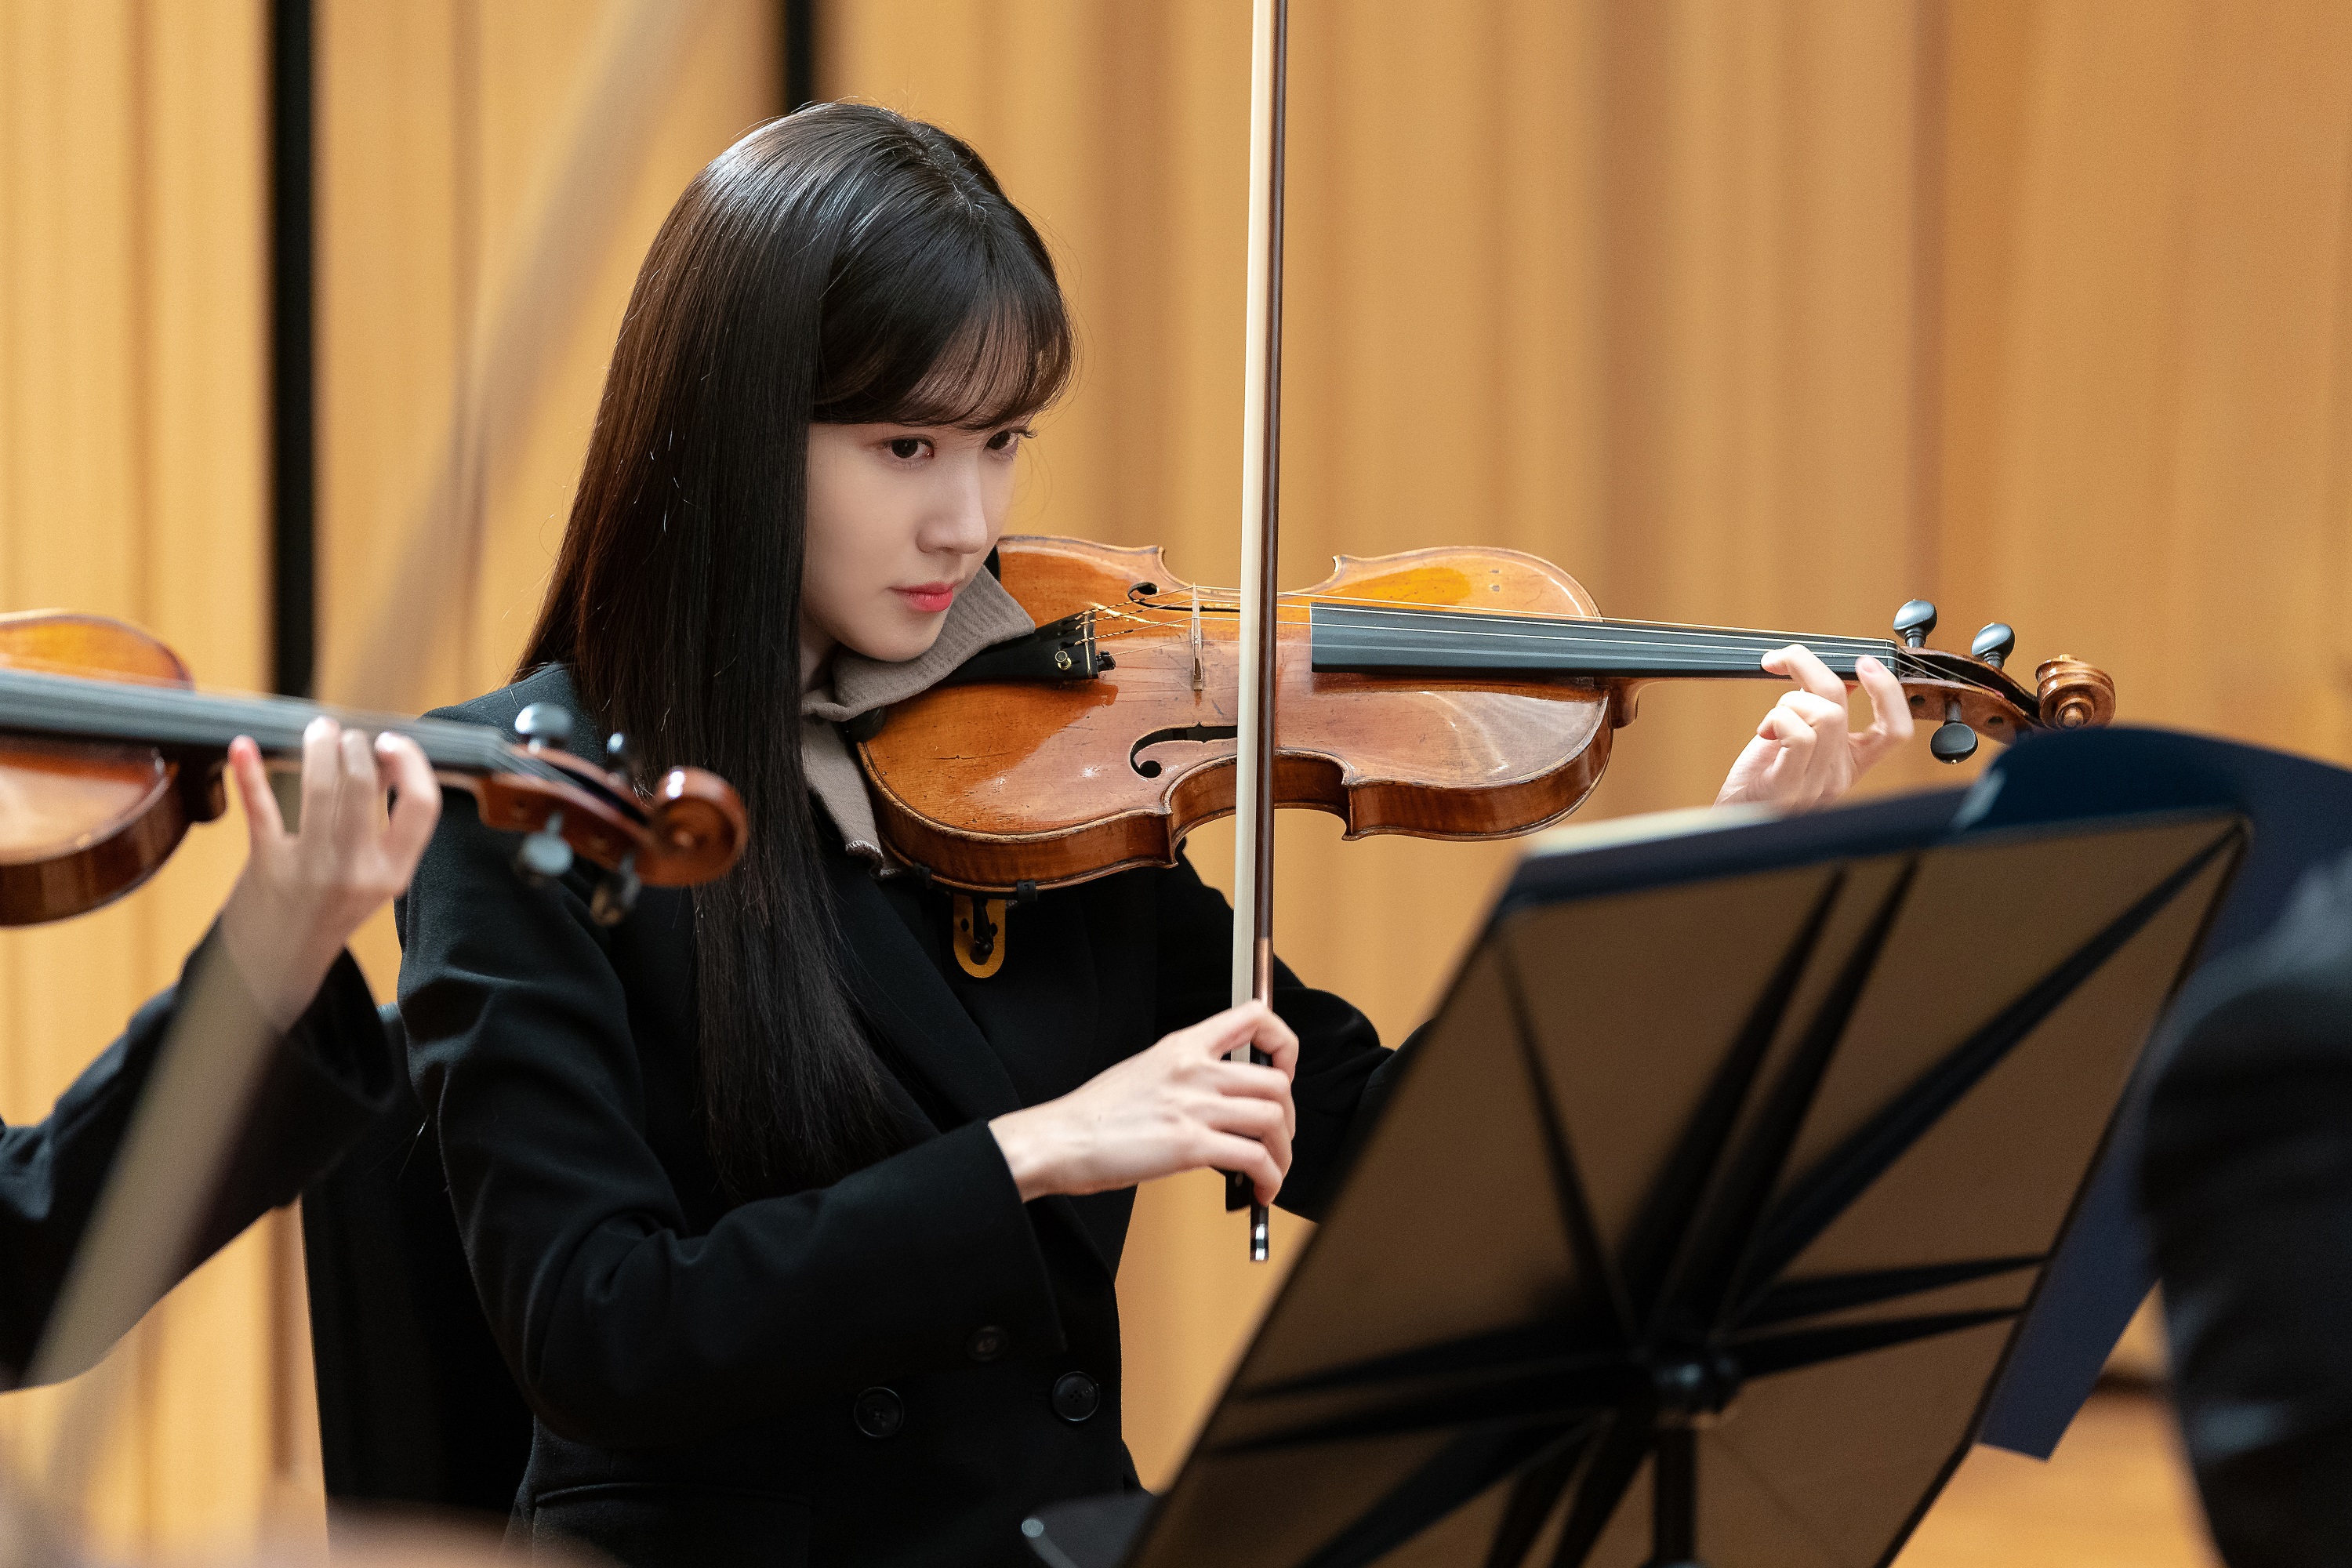 주연 배우 박은빈(사진)과 김민재는 각각 바이올린과 피아노 연주 연기를 위해 연습에 매진했다. SBS 제공